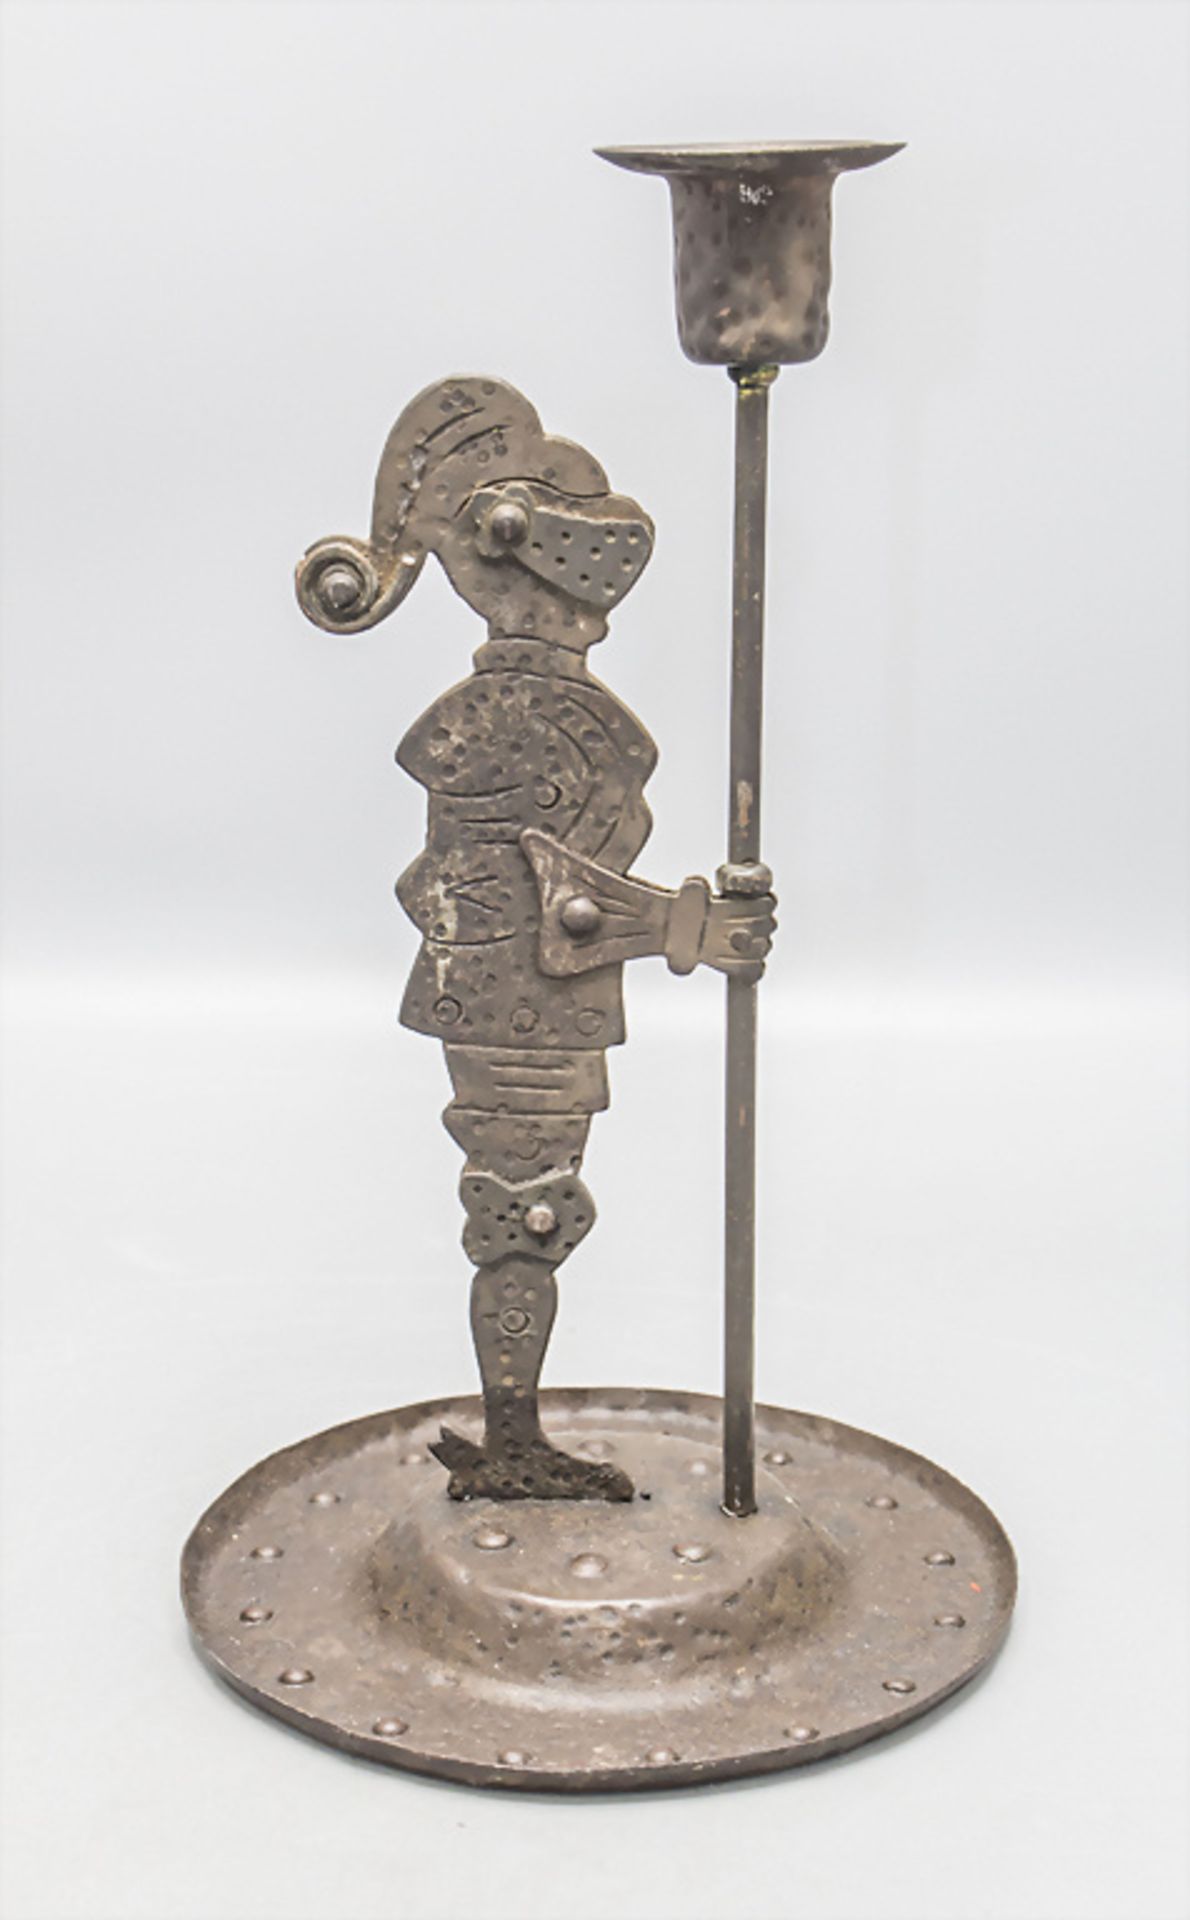 Jugendstil Ritter mit Kerzenleuchter / An Art Nouveau knight with a candle holder, Hugo ... - Image 2 of 5